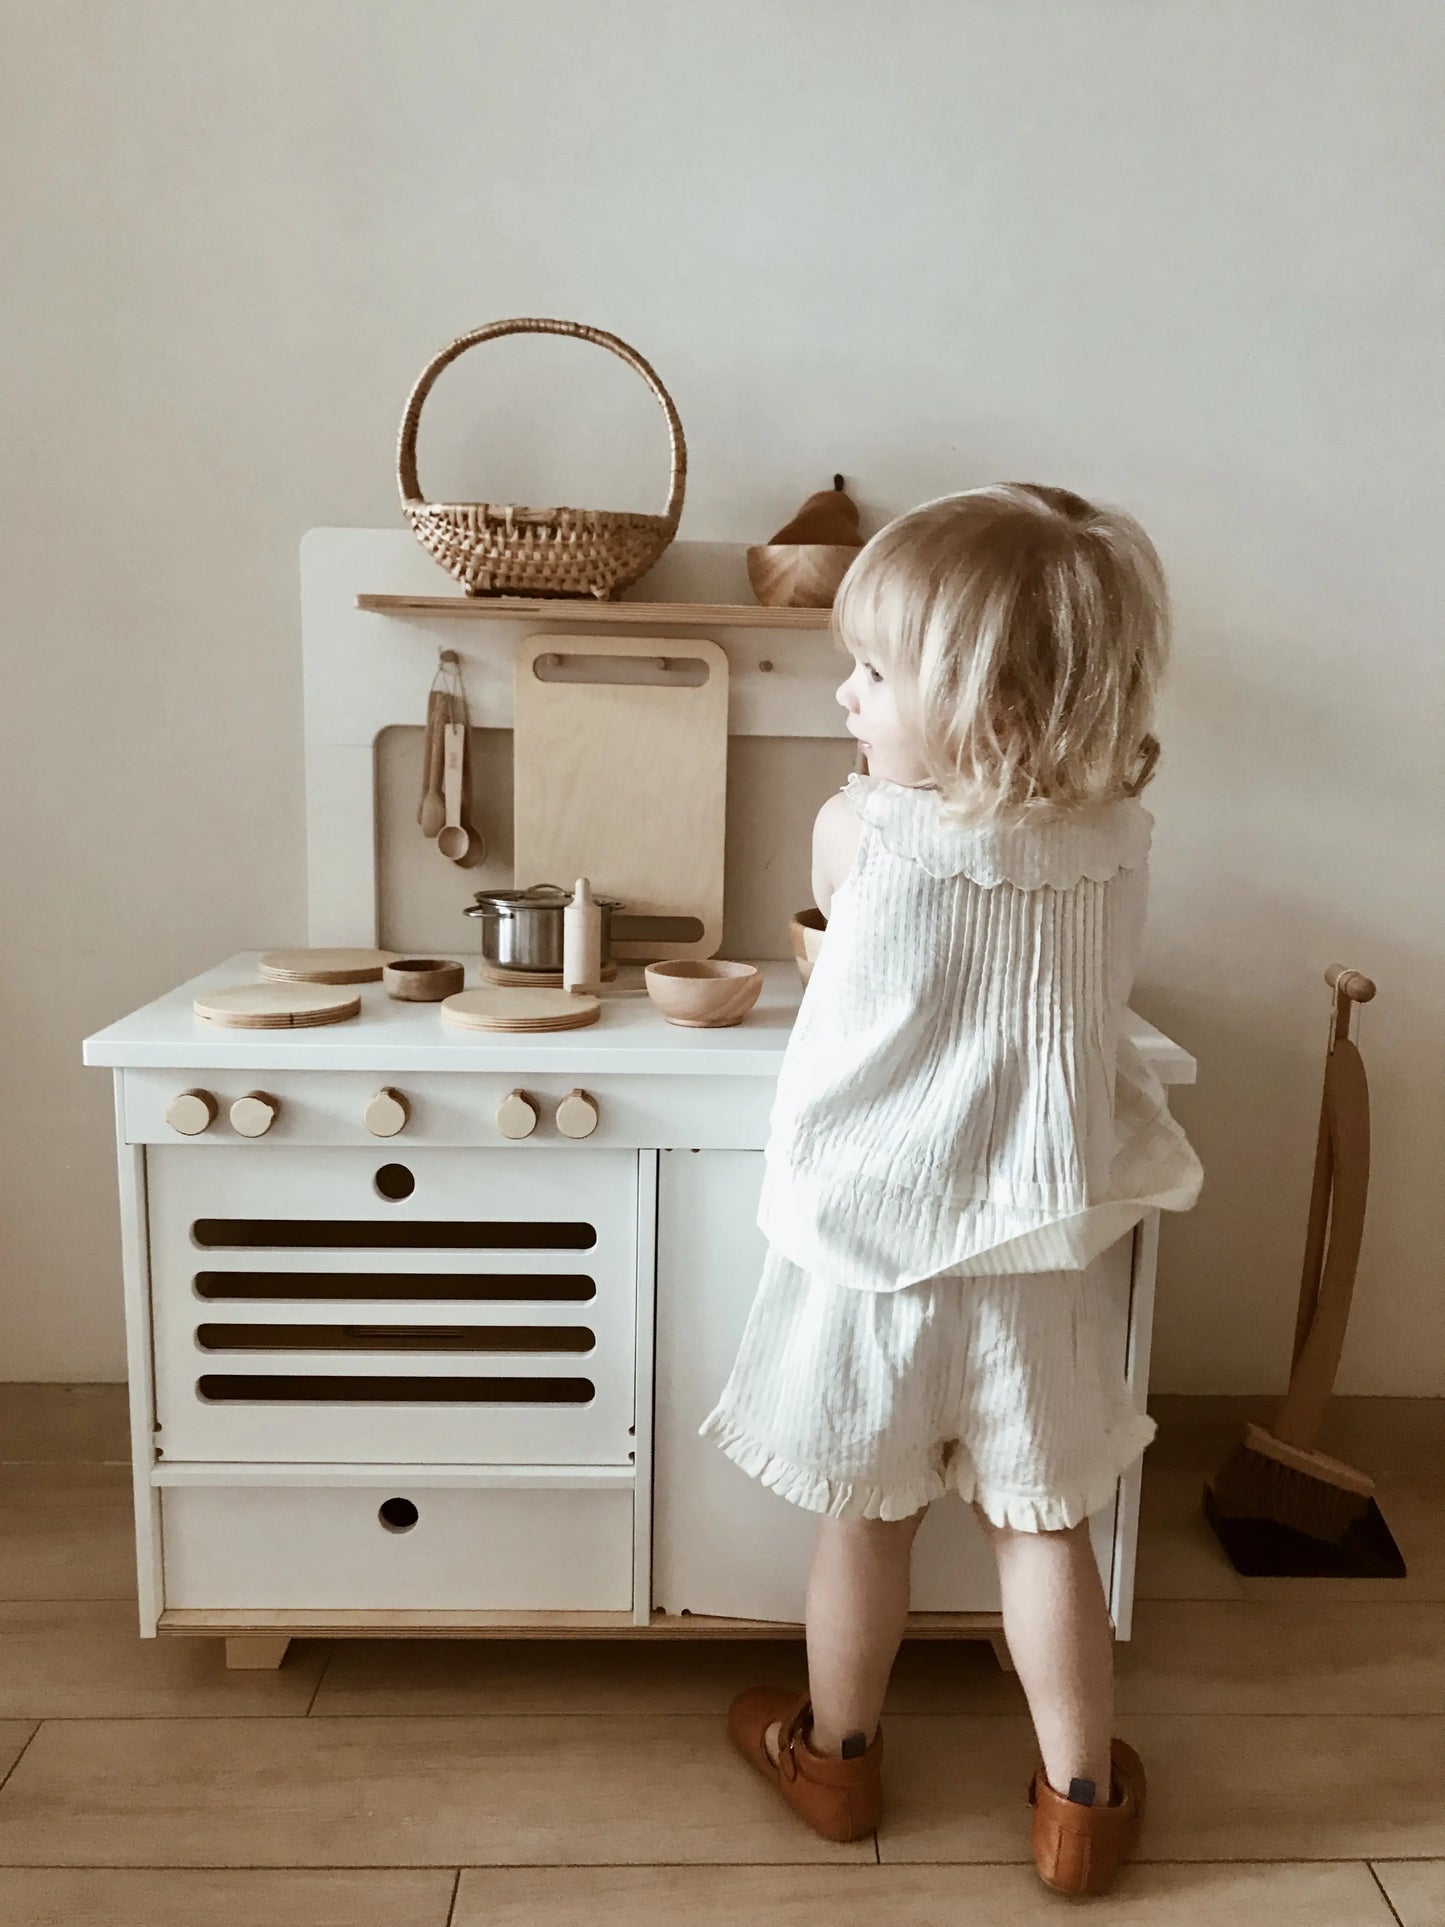 ZOE Milk Wooden Play Kitchen + MIDMINI Plywood Tea Set for FREE